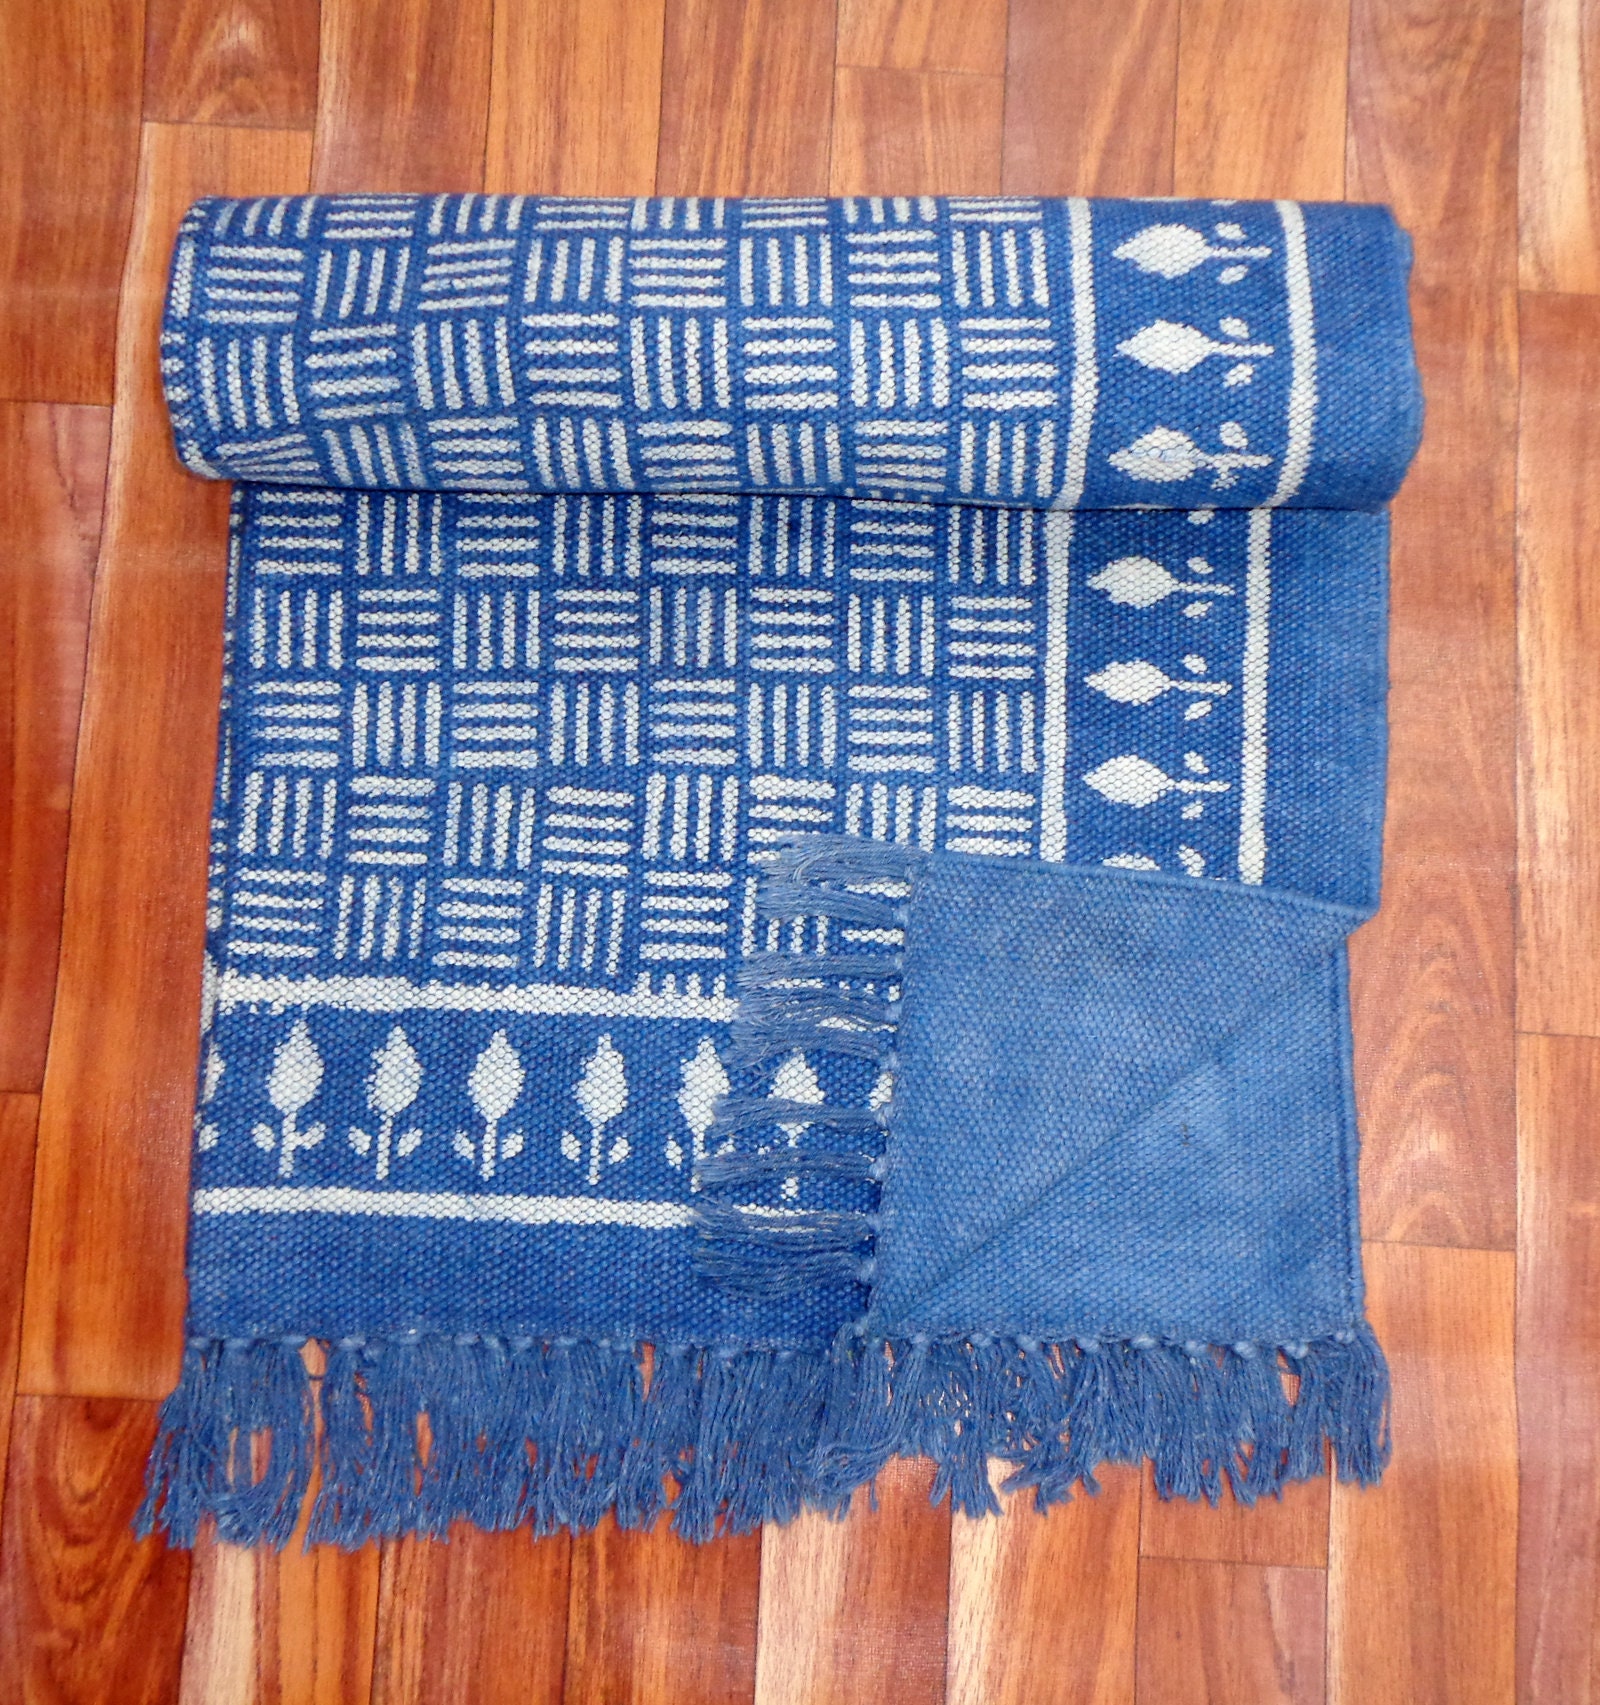 5x7.Ft Rug Indigo Rug Indian Rug Dari Rug Cotton Rug Handmade | Etsy